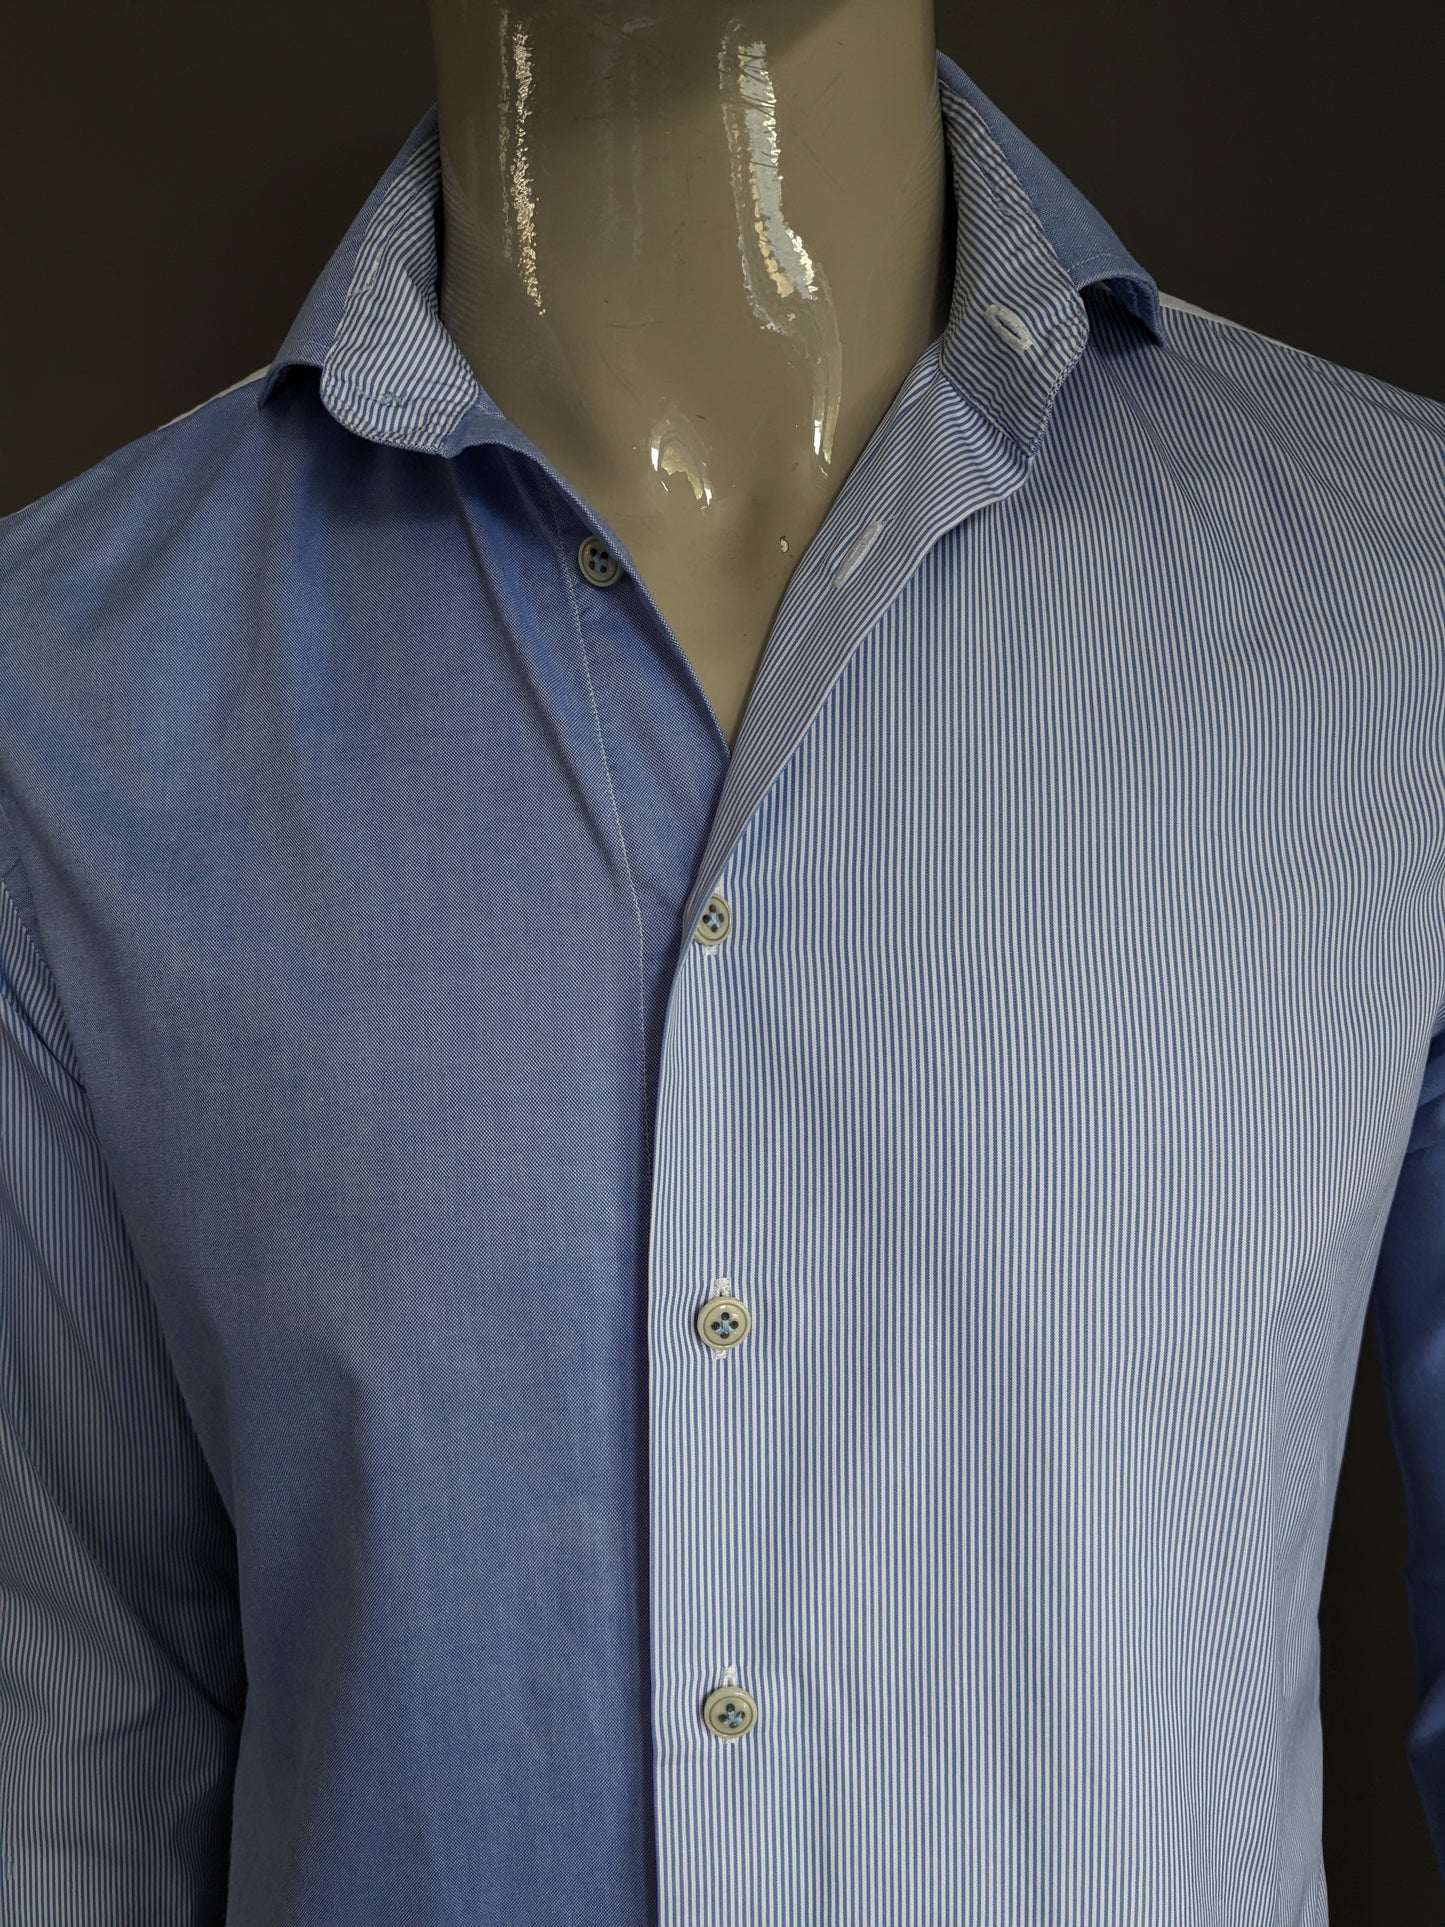 Profuomo Sky Blue Shirt. Blau weiß gefärbte / Motiv. Größe 40 / m Slim Fit.